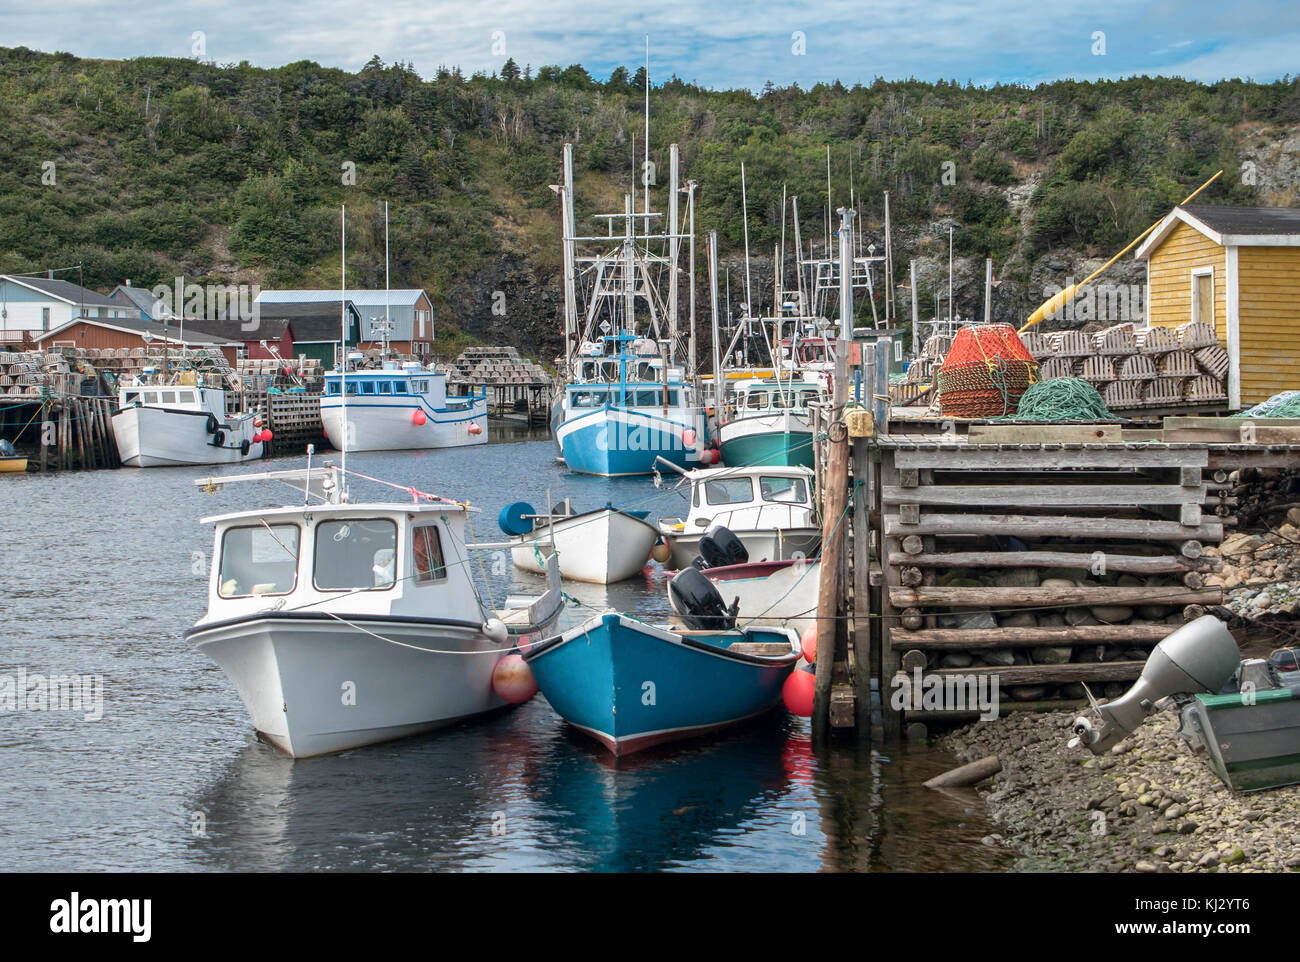 Kleiner Hafen in Neufundland: Angeln Boote sammeln Neben rustikalen Holzmöbeln Docks mit Hummer fallen in der Nähe des Dorfes Fluss Forellen gestapelt. Stockfoto